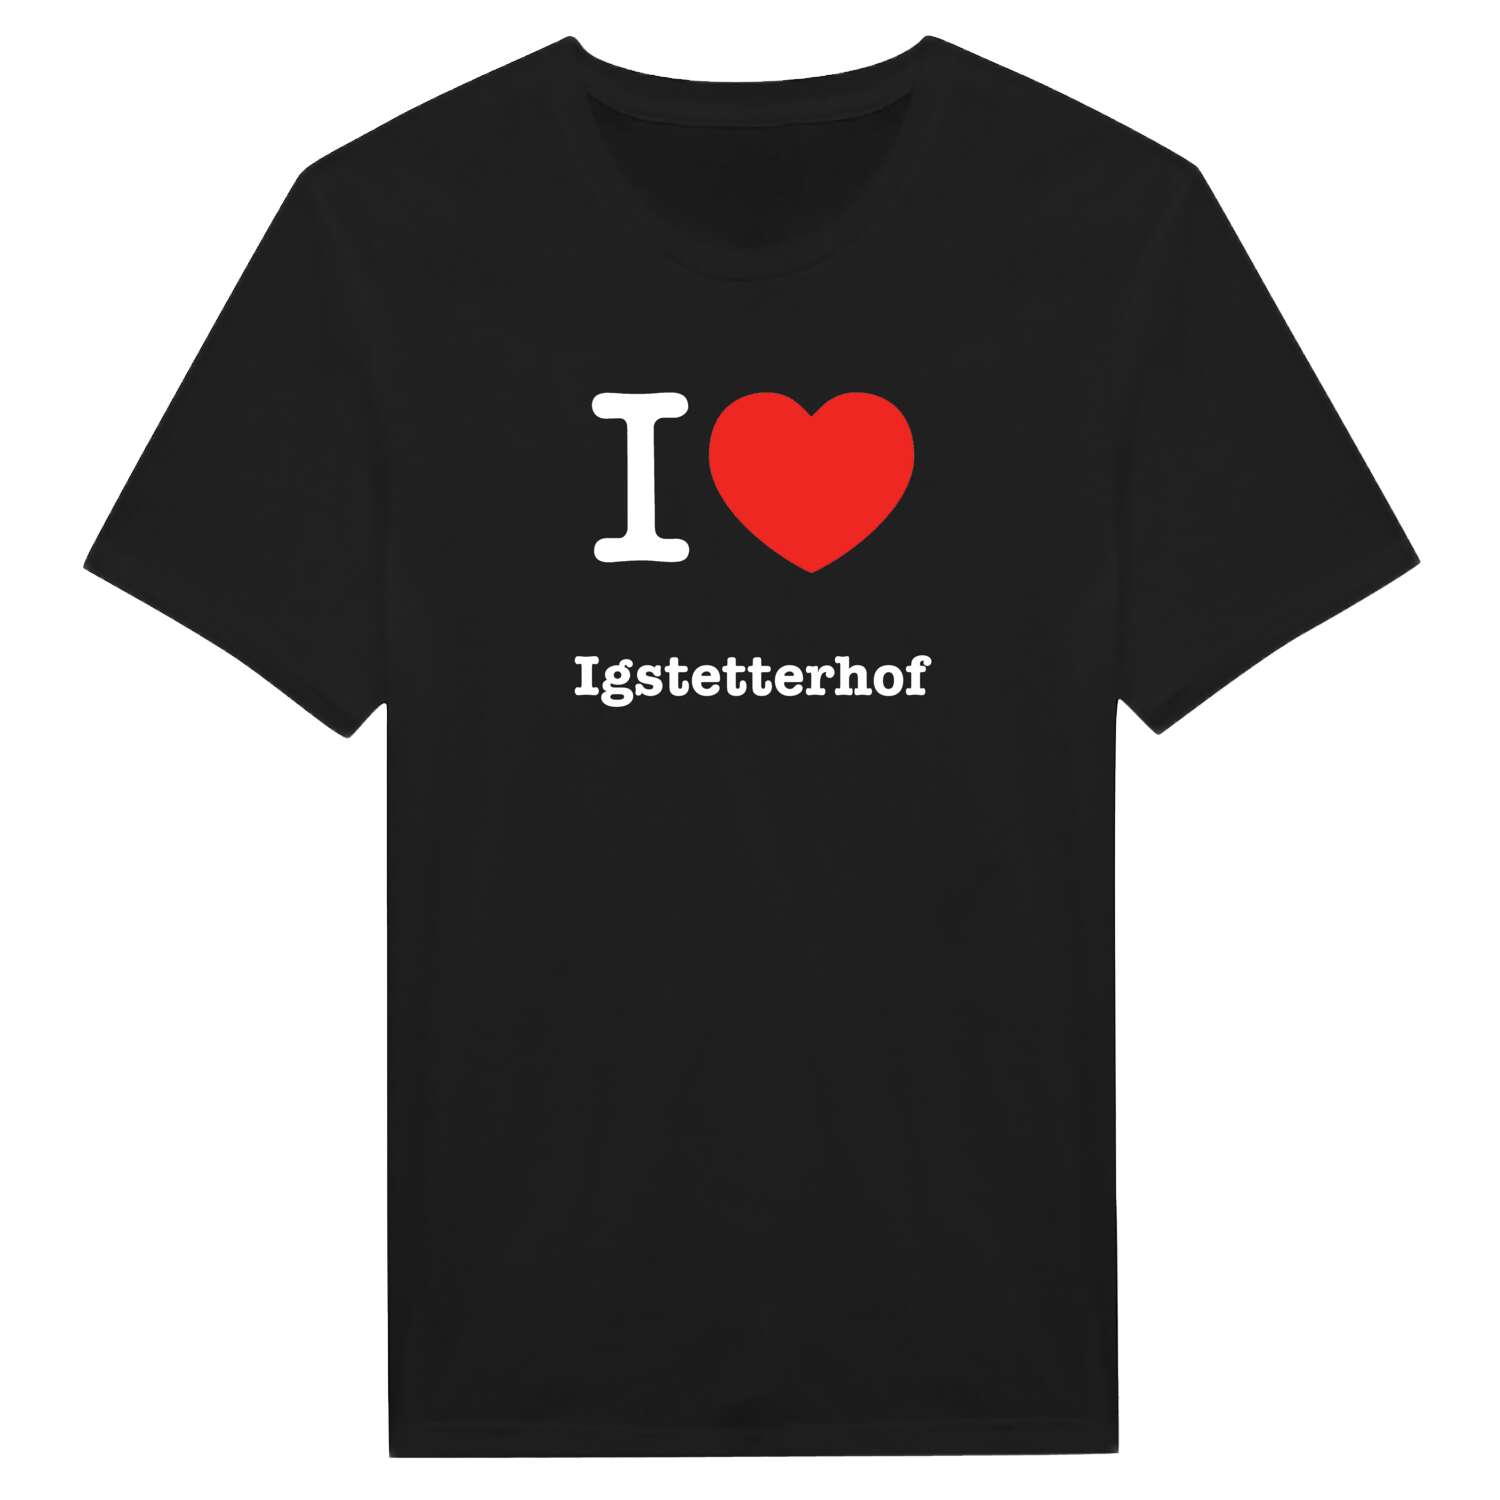 Igstetterhof T-Shirt »I love«